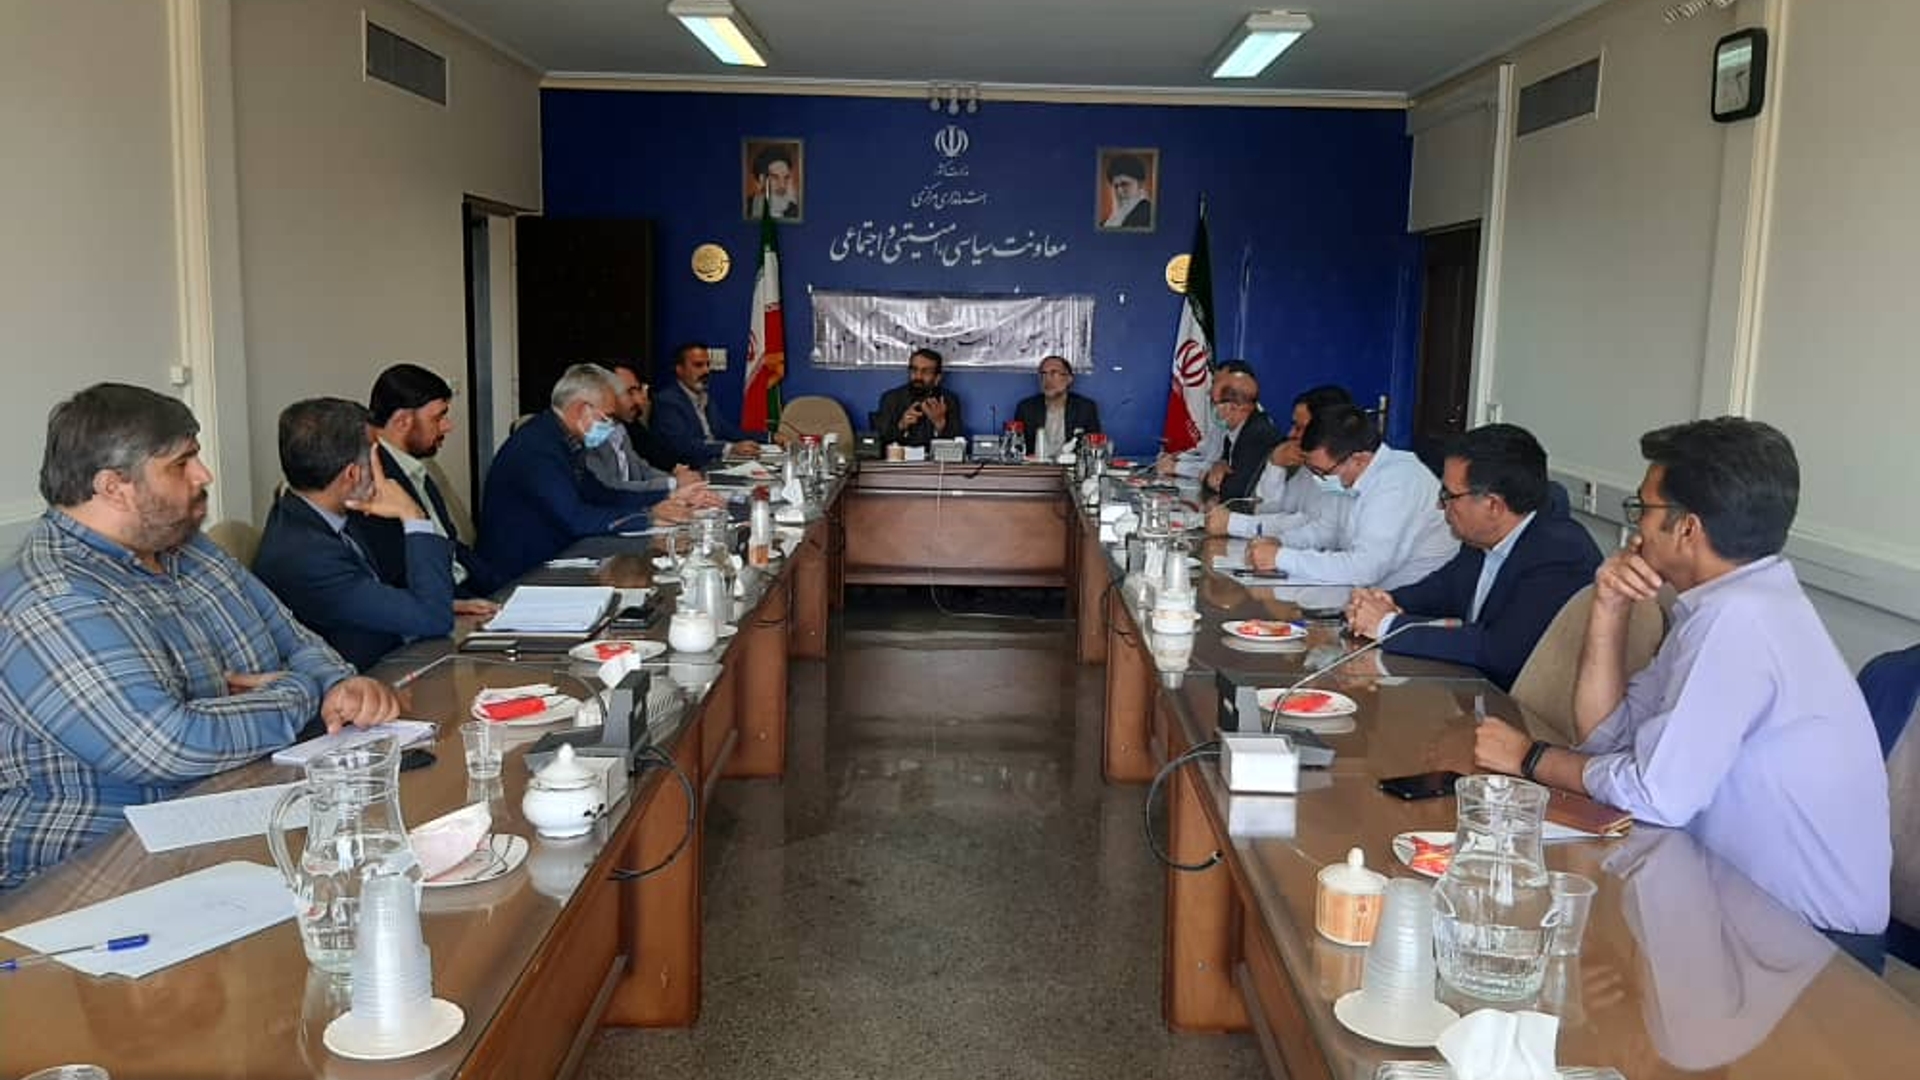 جلسه هماهنگي سفر ریاست جمهوری به استان مركزي در روز یکشنبه مورخ 1401-04-12 برگزار گردید.